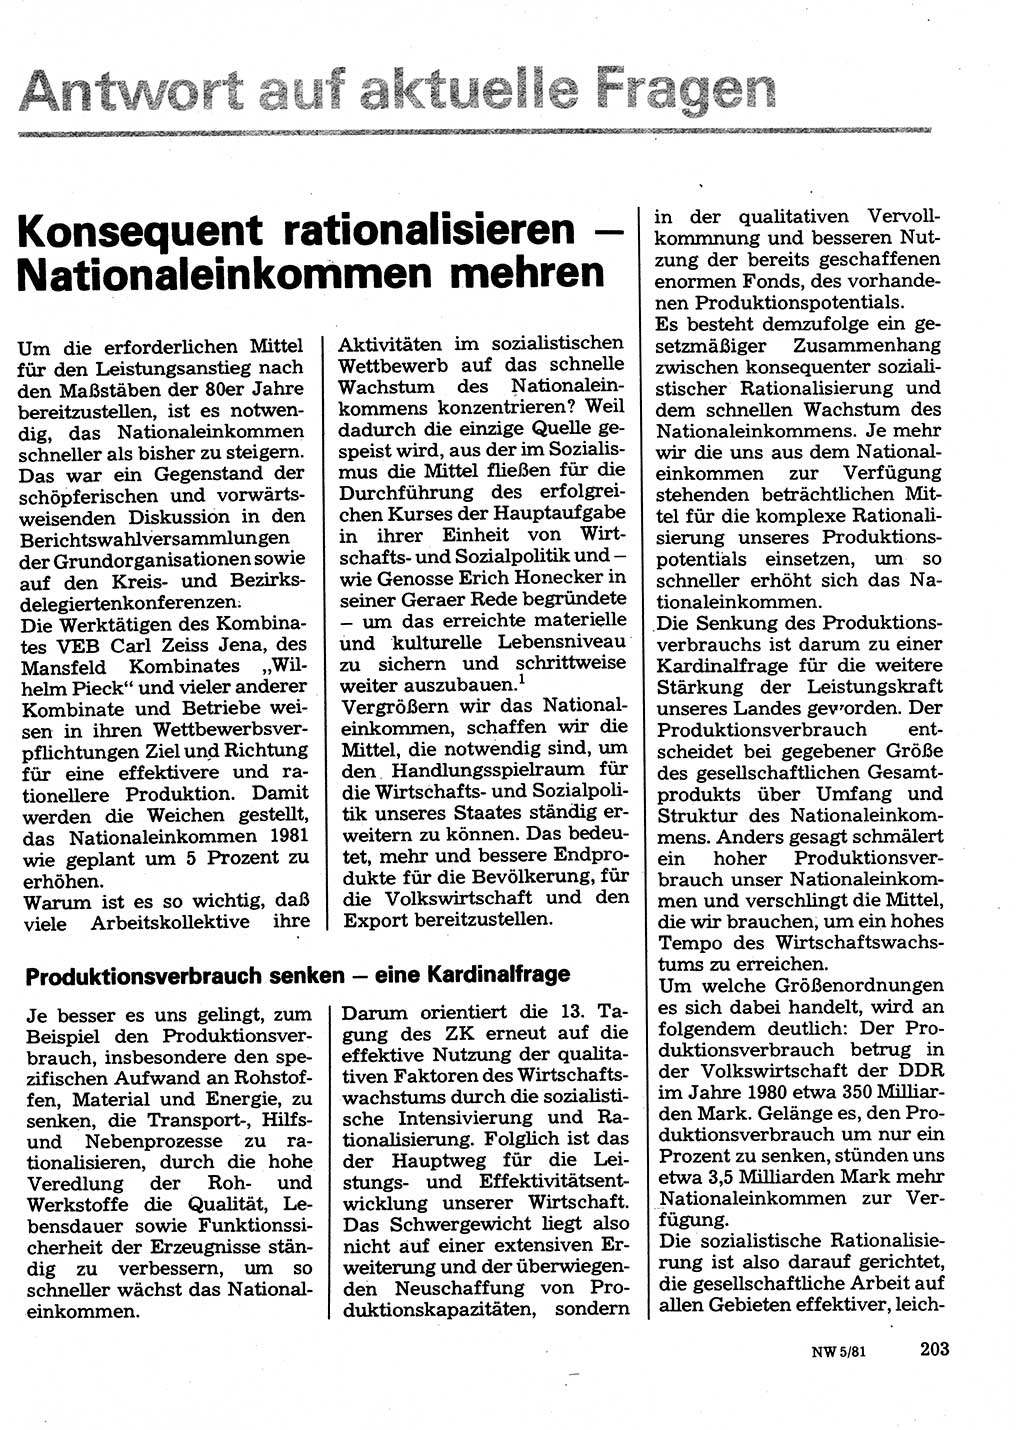 Neuer Weg (NW), Organ des Zentralkomitees (ZK) der SED (Sozialistische Einheitspartei Deutschlands) für Fragen des Parteilebens, 36. Jahrgang [Deutsche Demokratische Republik (DDR)] 1981, Seite 203 (NW ZK SED DDR 1981, S. 203)